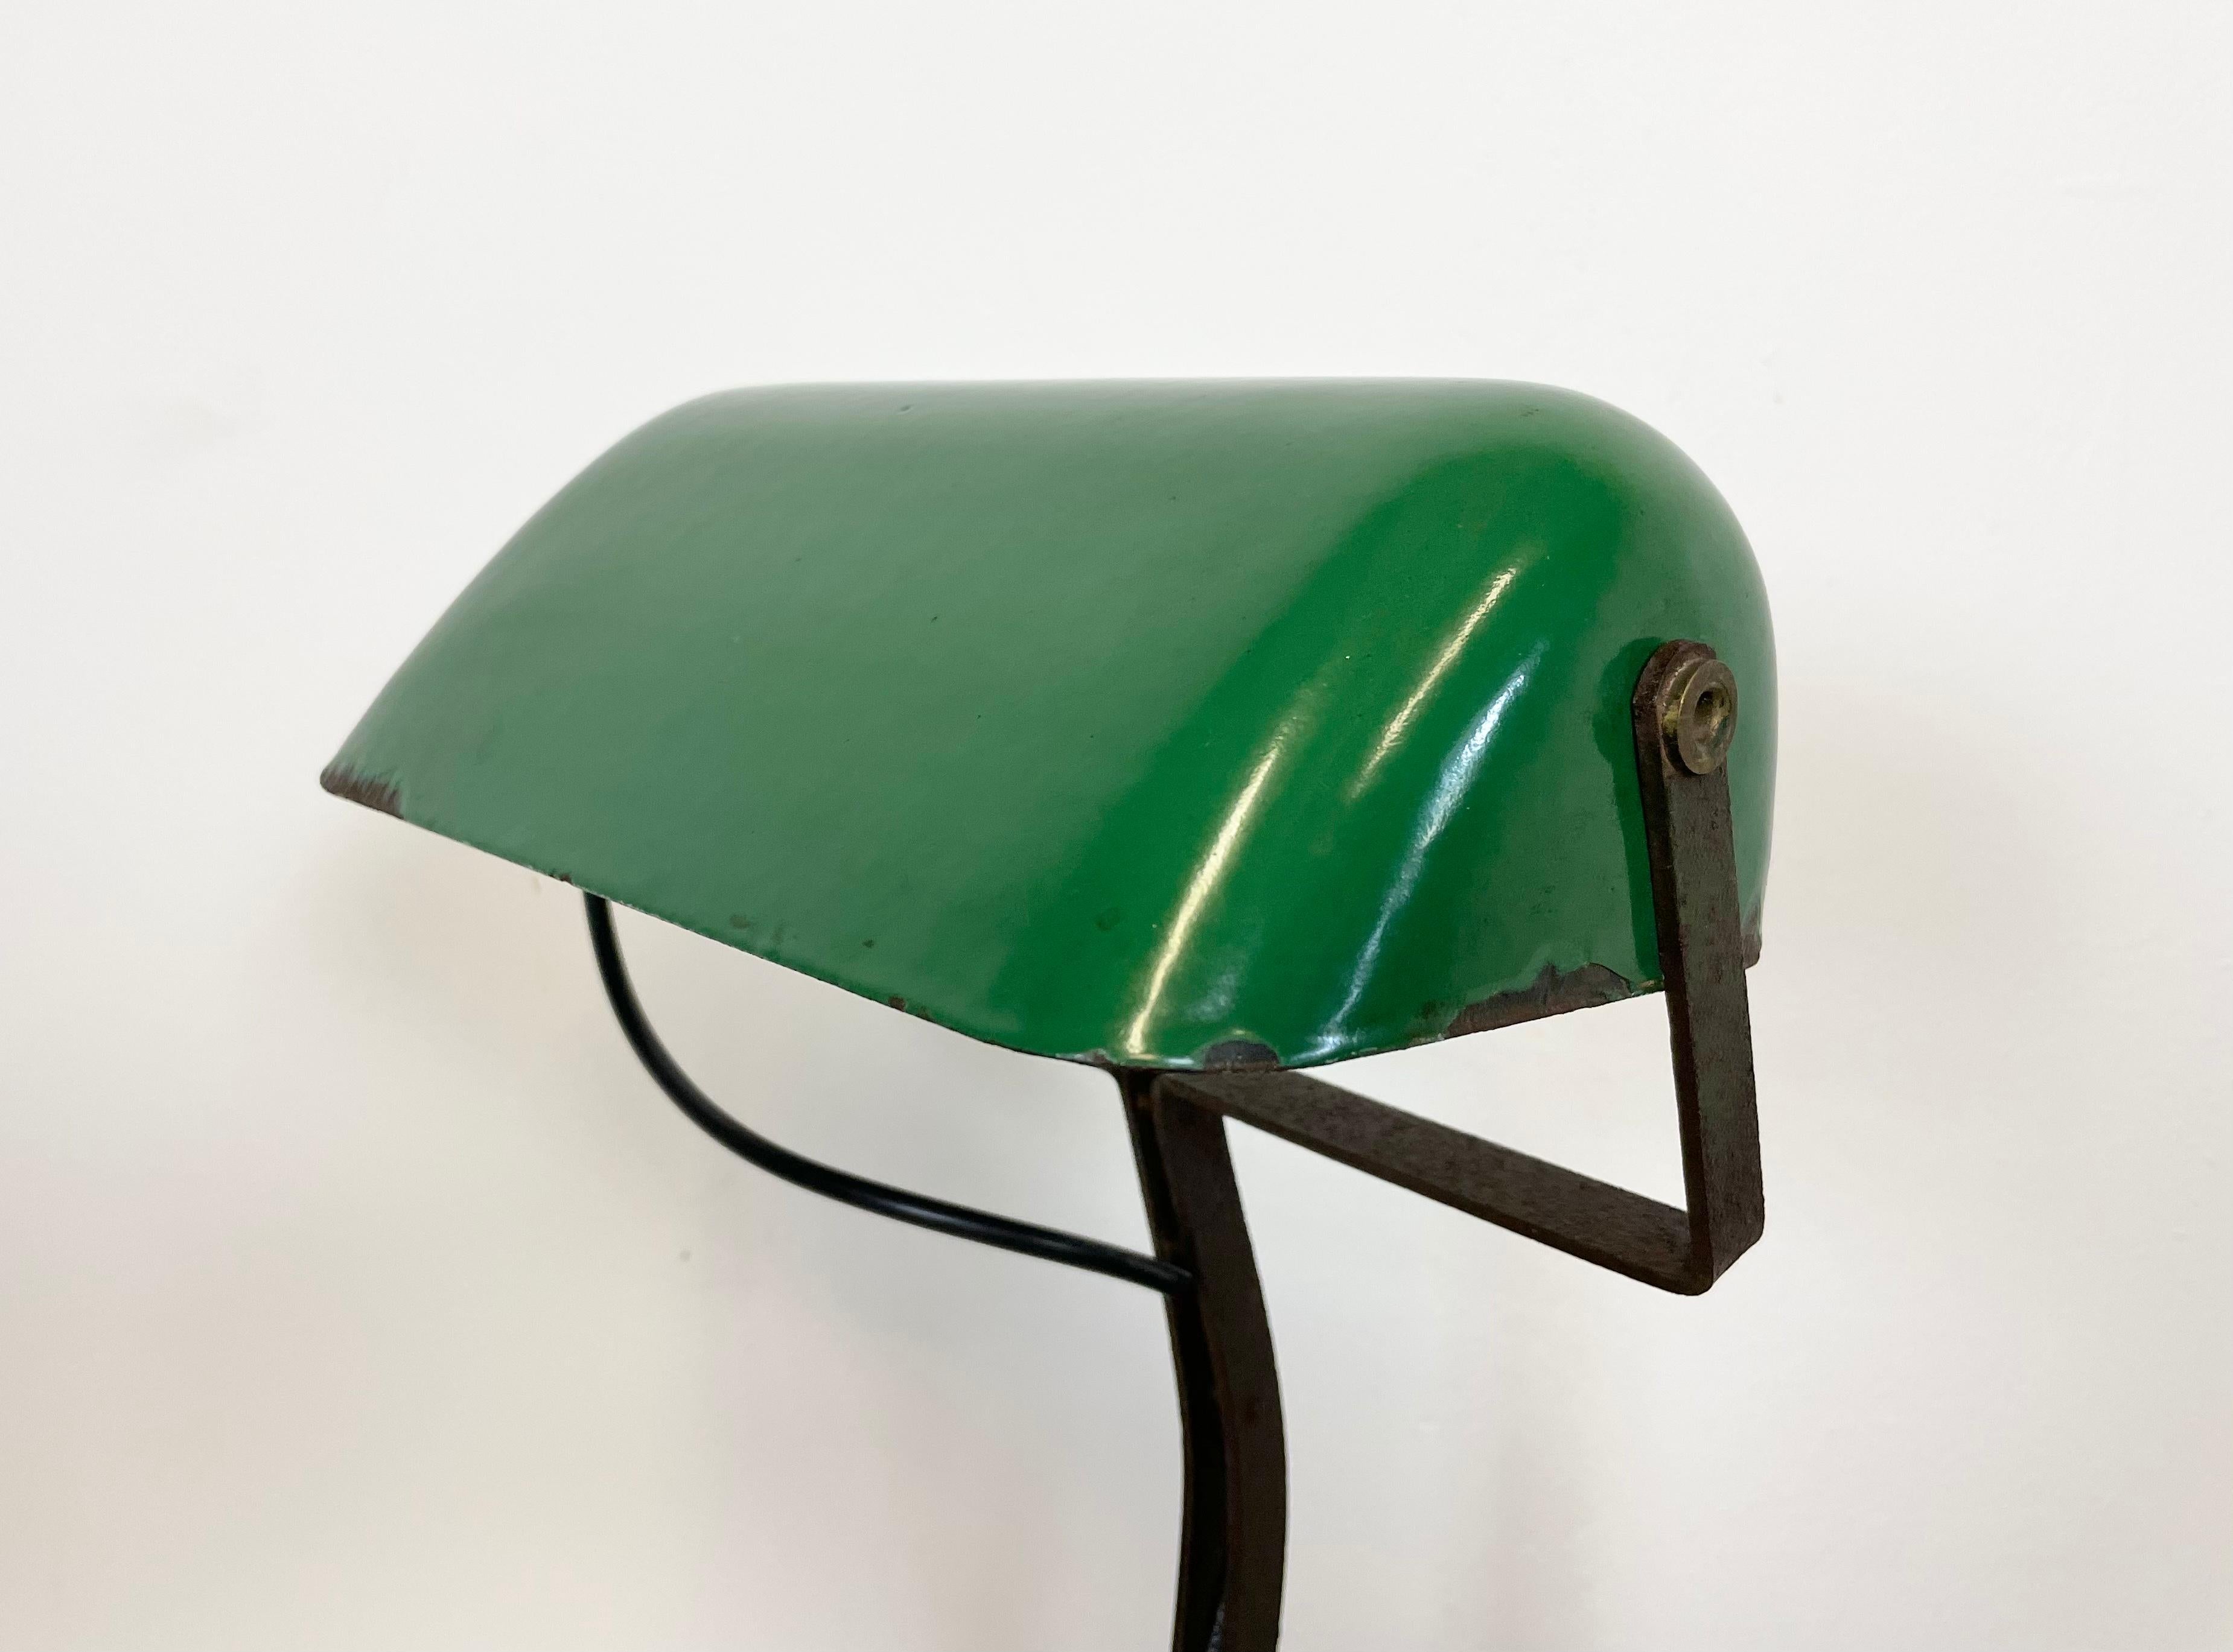 Vieille lampe de table verte fabriquée par Astral Austrian Make dans les années 1930. Il comporte une base en fonte et un abat-jour en fer émaillé vert avec intérieur blanc. La douille originale en porcelaine avec interrupteur nécessite des ampoules